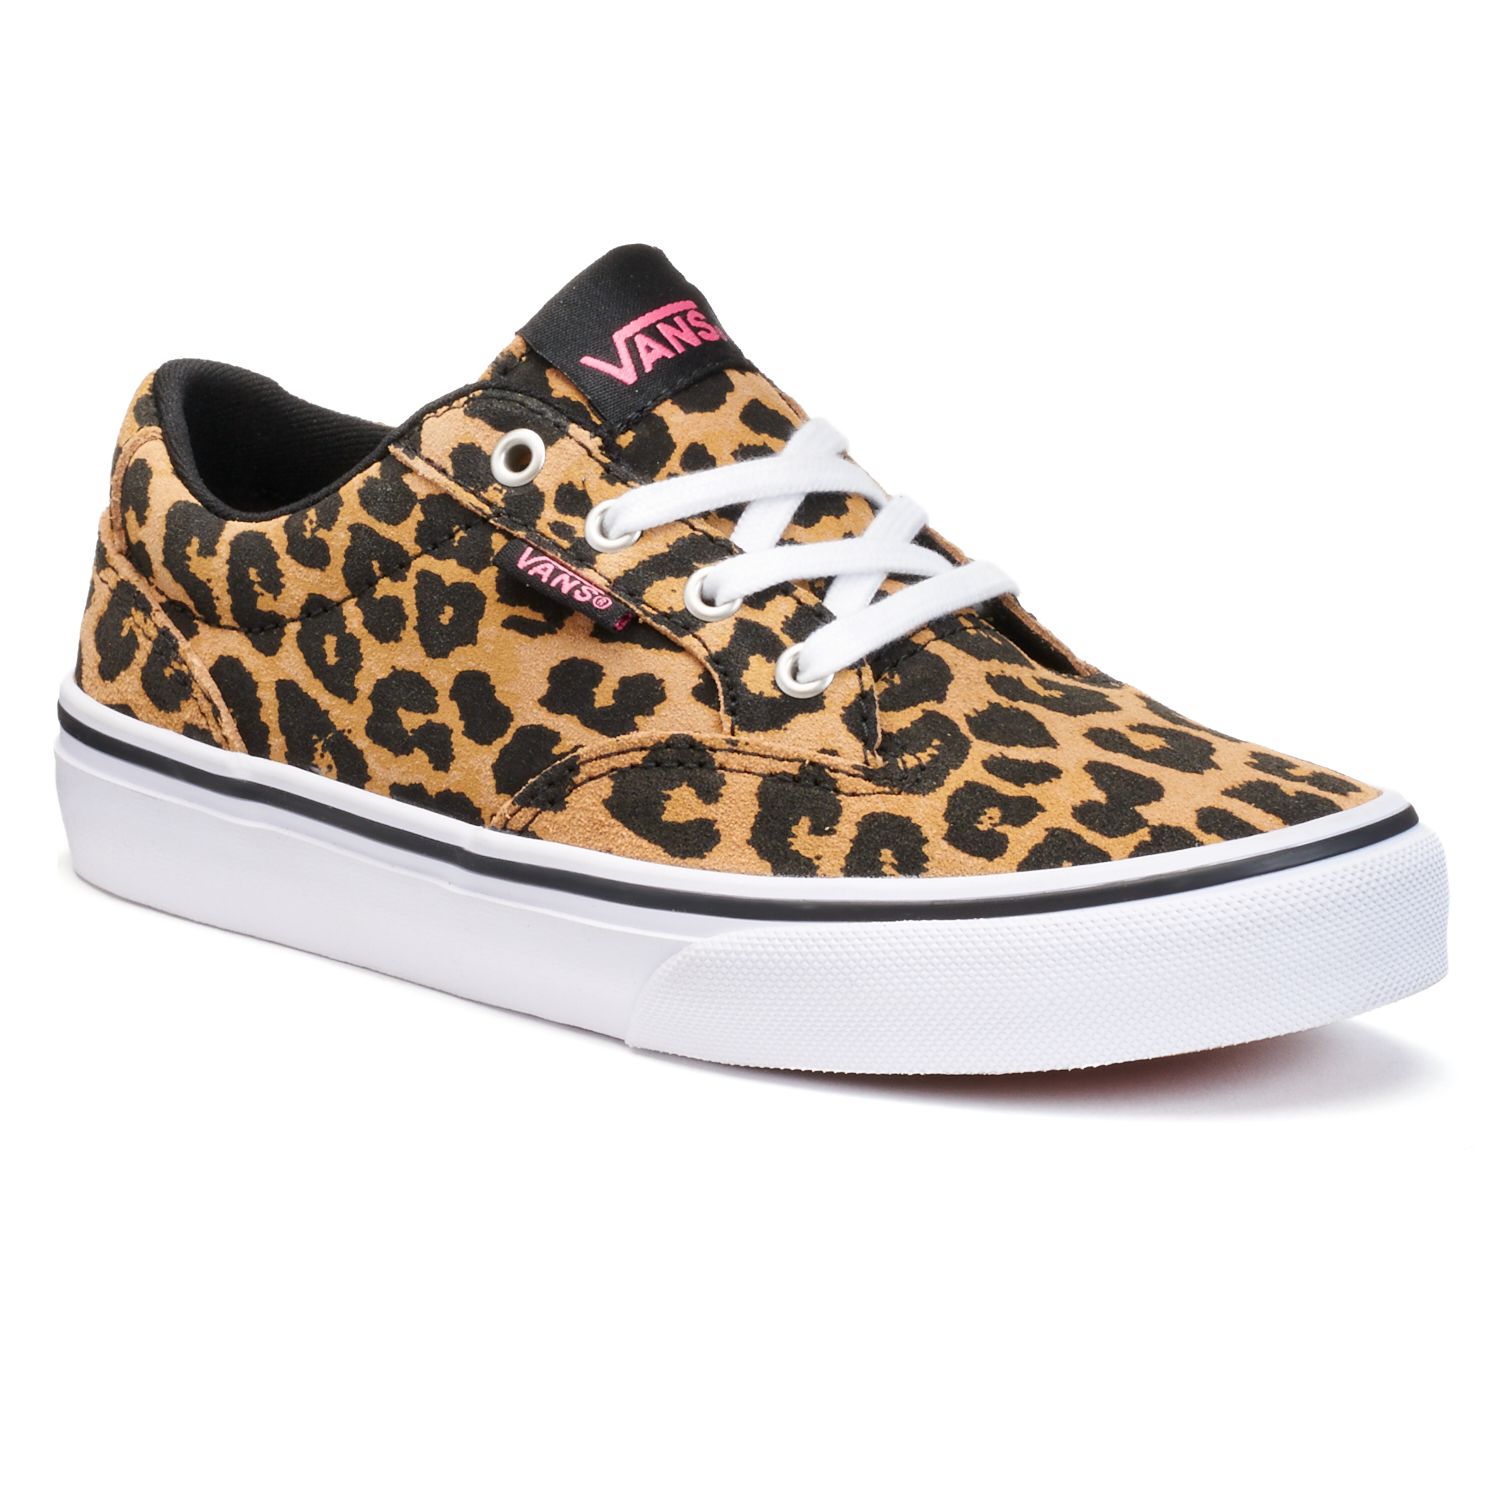 Vans Winston Leopard Print Girls' Skate 